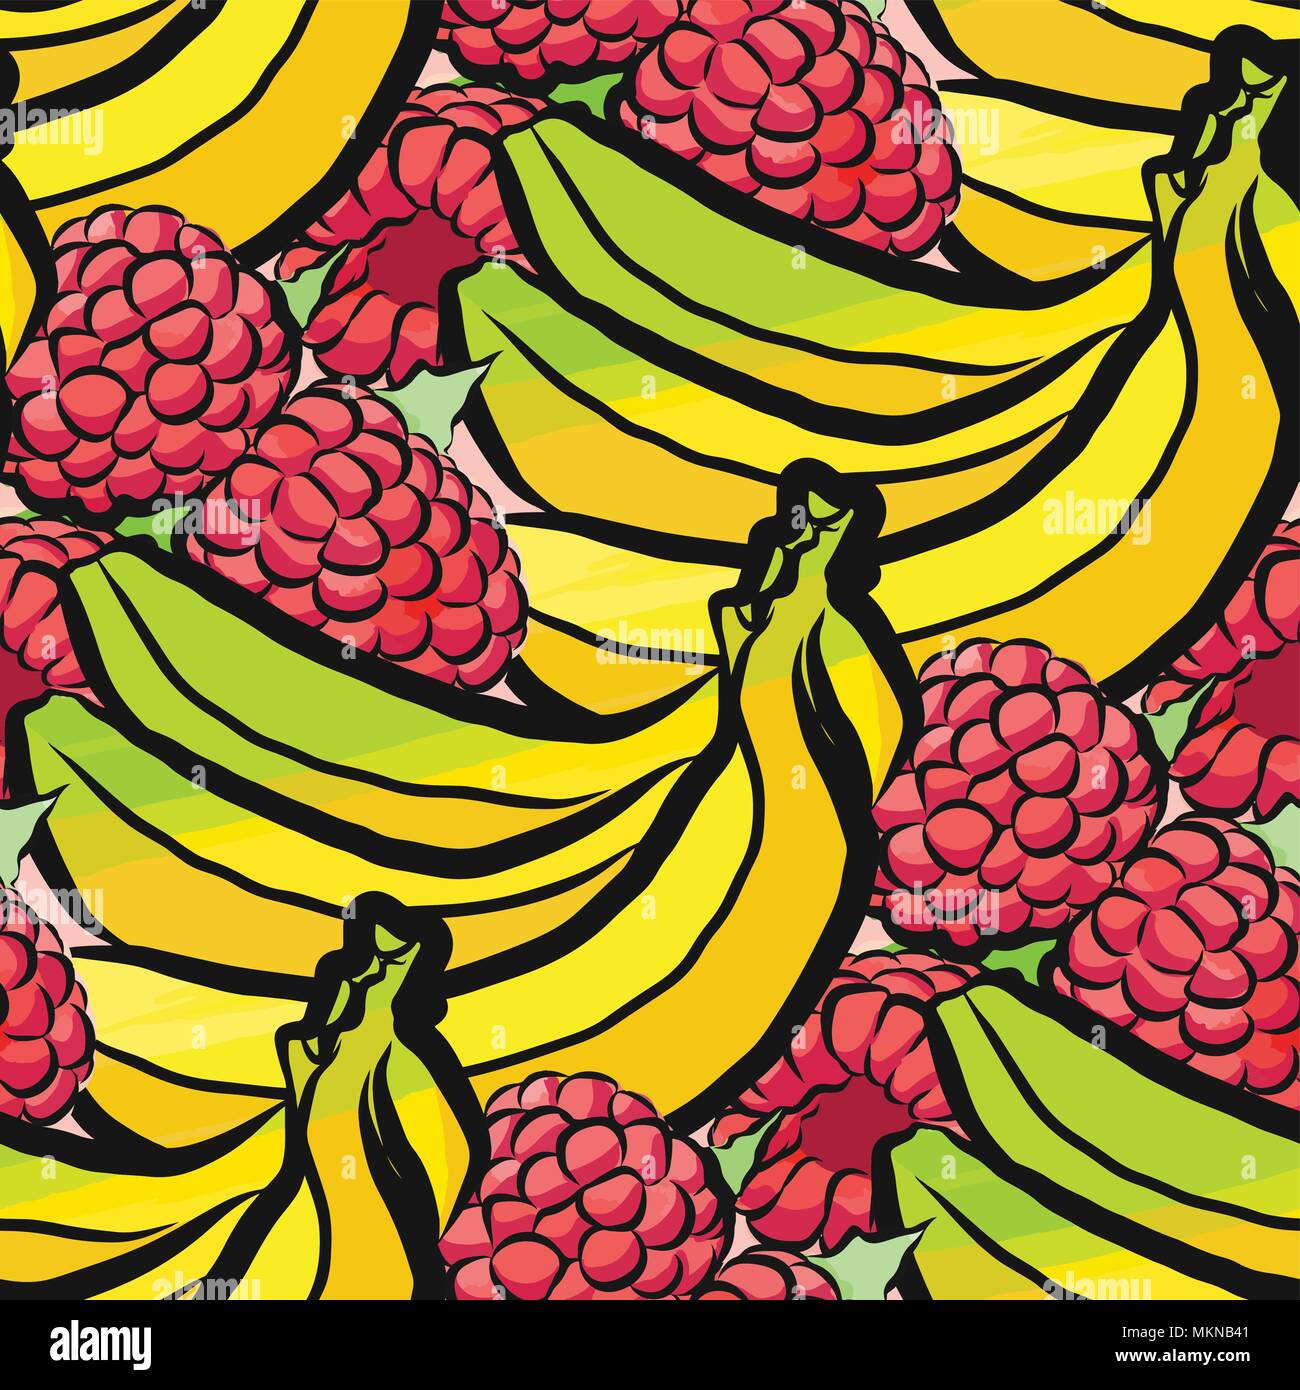 Vektor nahtlose Muster von Himbeeren und Bananen. Von Hand gezeichnet und farbige Abbildung Stock Vektor